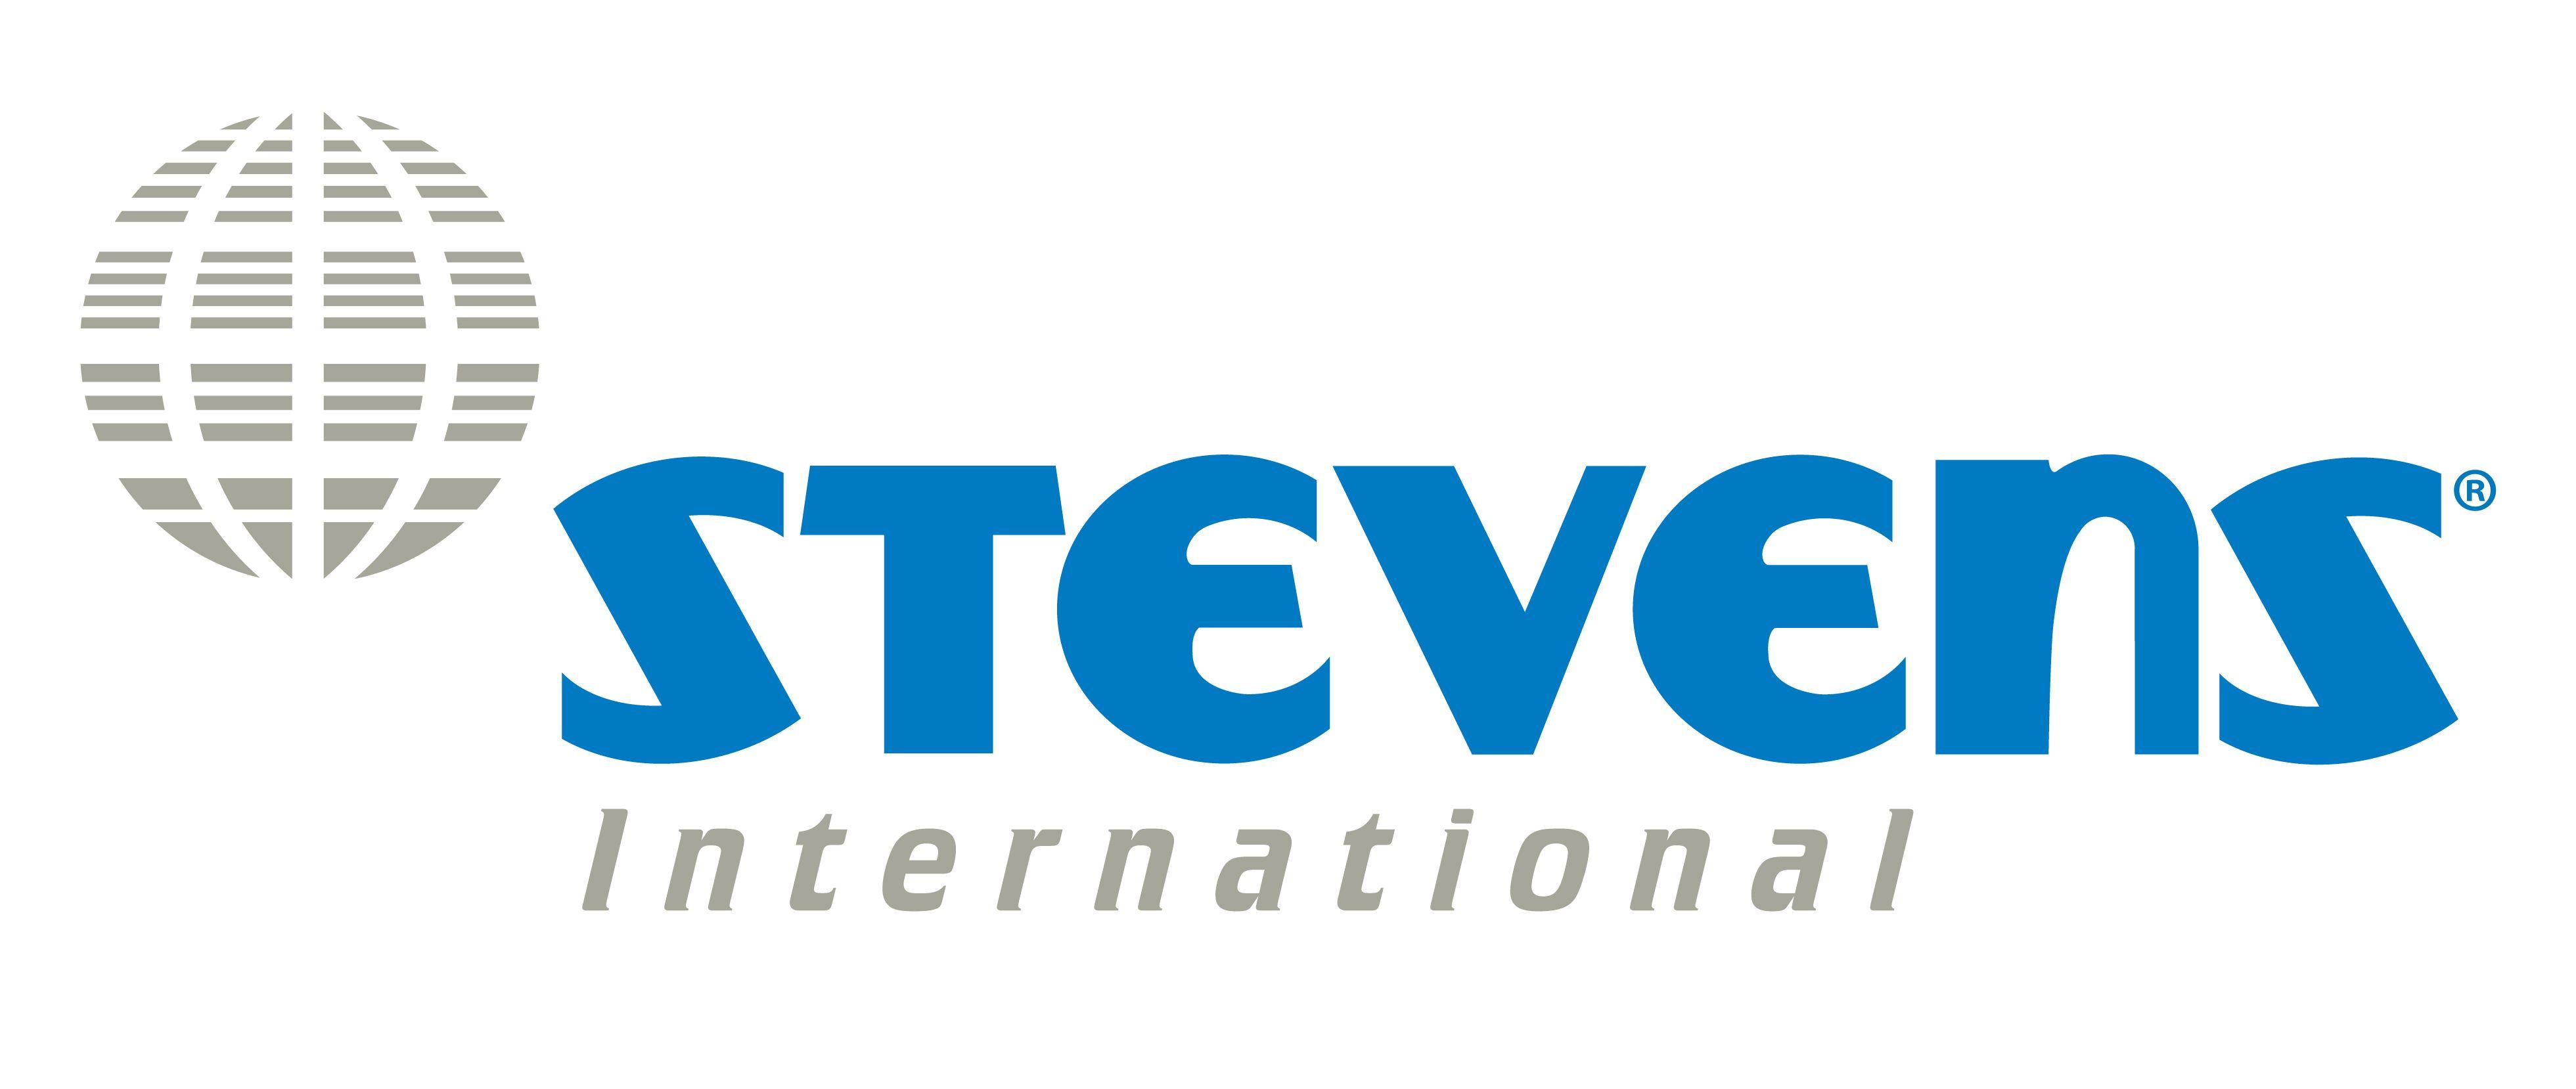 Stevens Logo - Interstate Agent Logo | Stevens Worldwide Van Lines